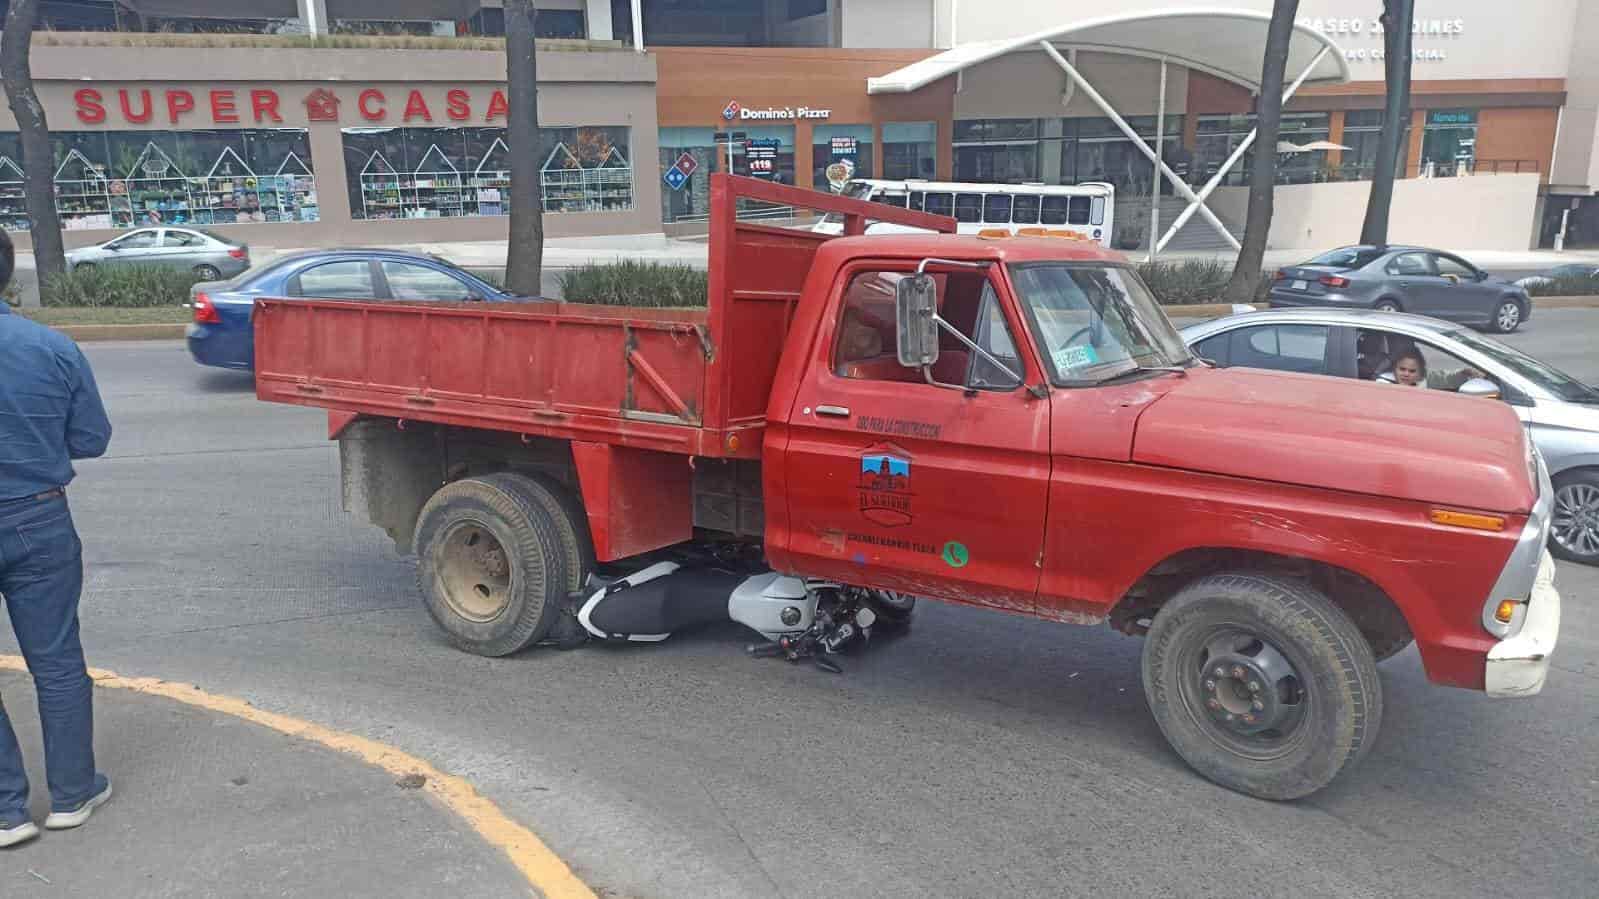 ¡Casi no la cuenta! Motociclista termina debajo de una camioneta en Xalapa